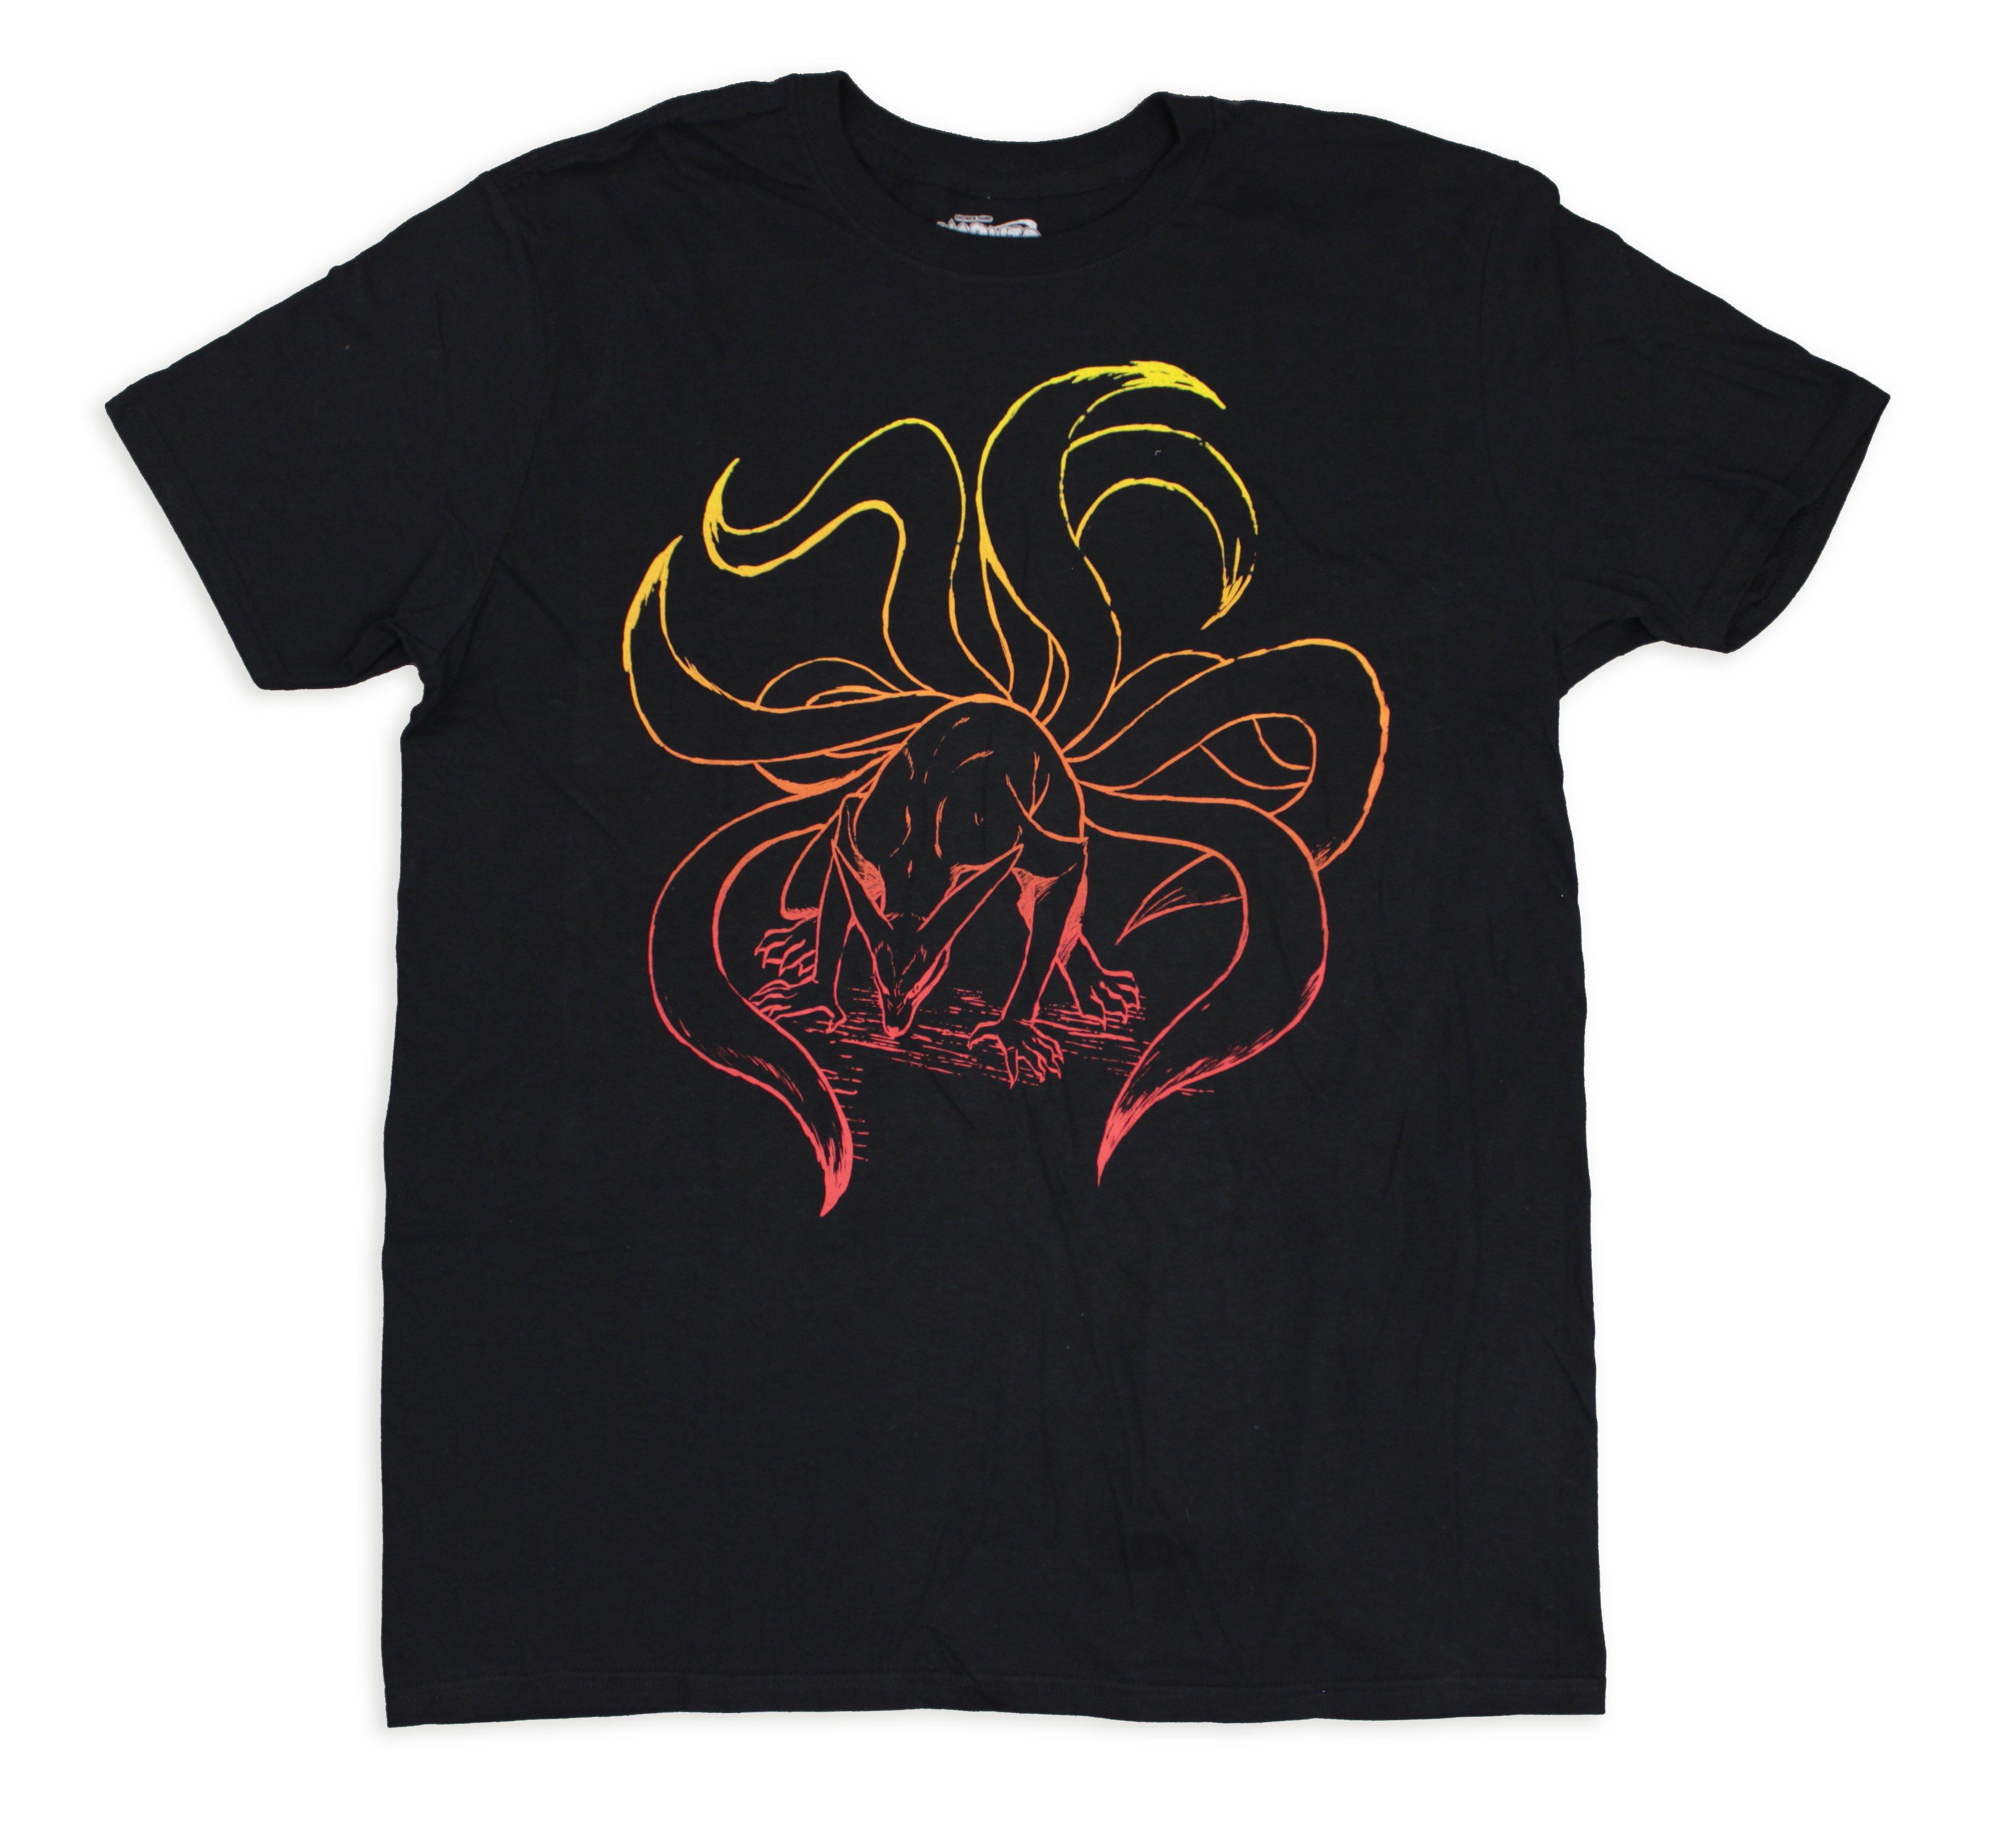 Naruto Shippuden Akatsuki T Shirt Ripple Junction Design Co Gamestop On Gamestop Fandom Shop - t shirt naruto roblox shirt